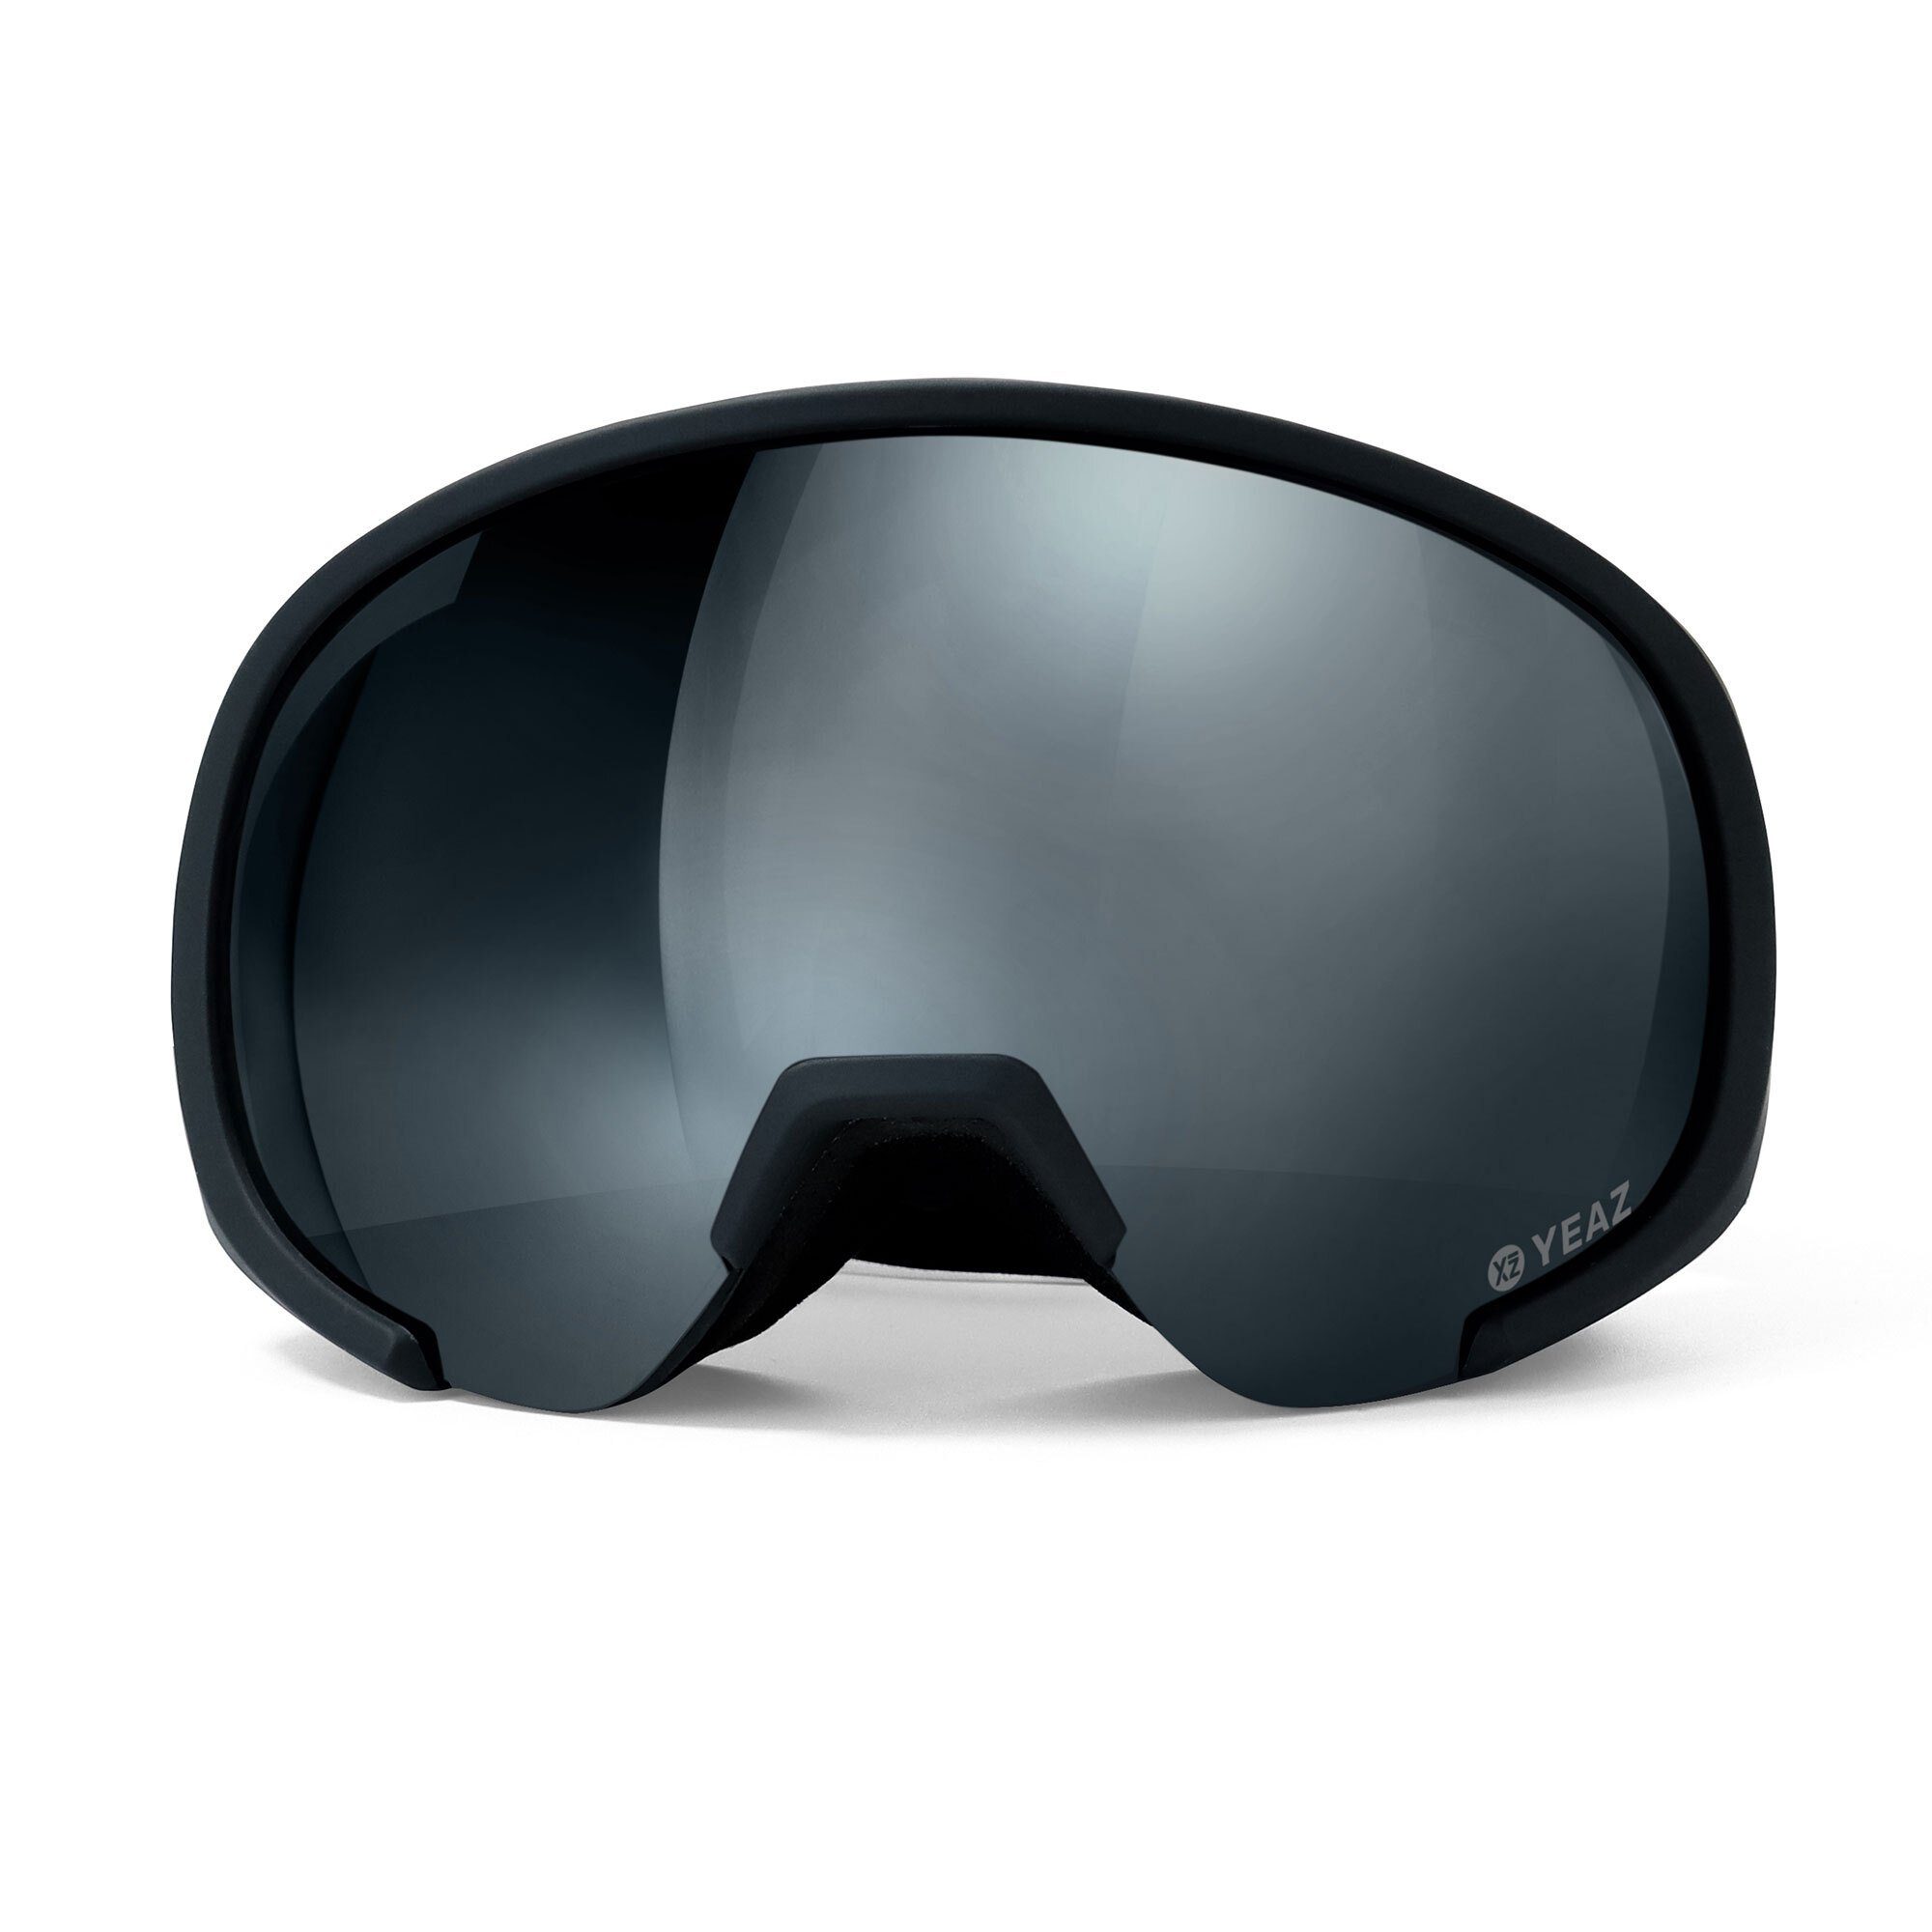 für RUN, Erwachsene und Premium-Ski- YEAZ Skibrille Jugendliche und Snowboardbrille BLACK